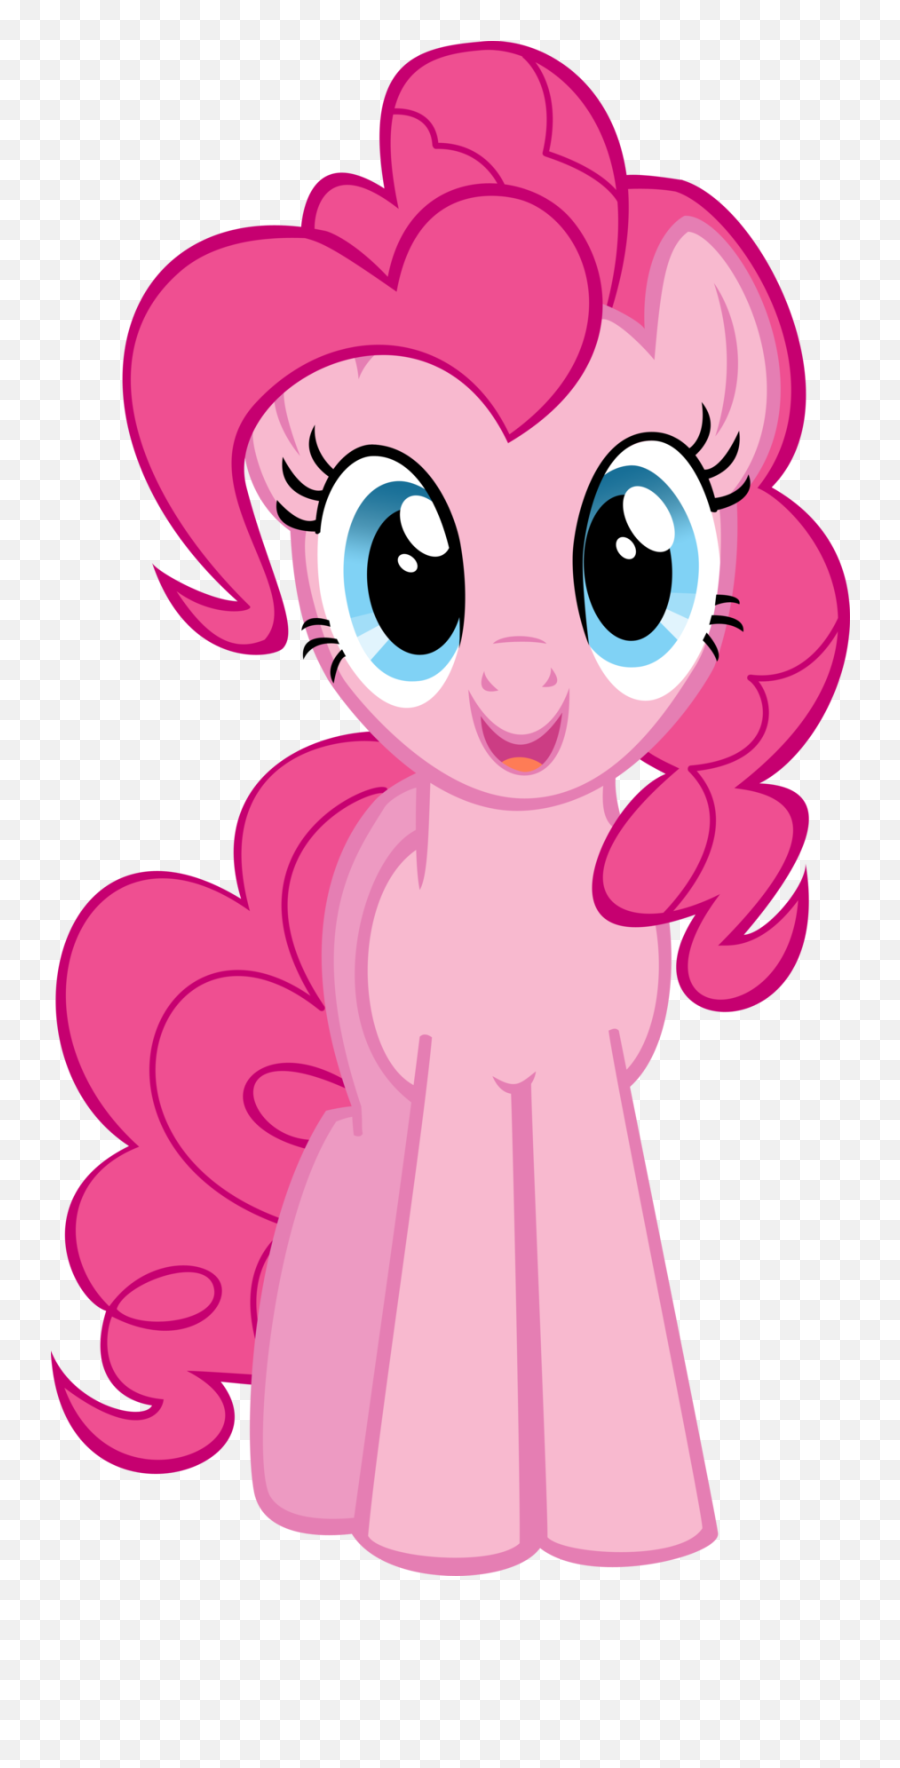 Buzzfeed - Pinkie Pie My Little Pony Transparent Emoji,Guess The Disney Movie Emoji Answers